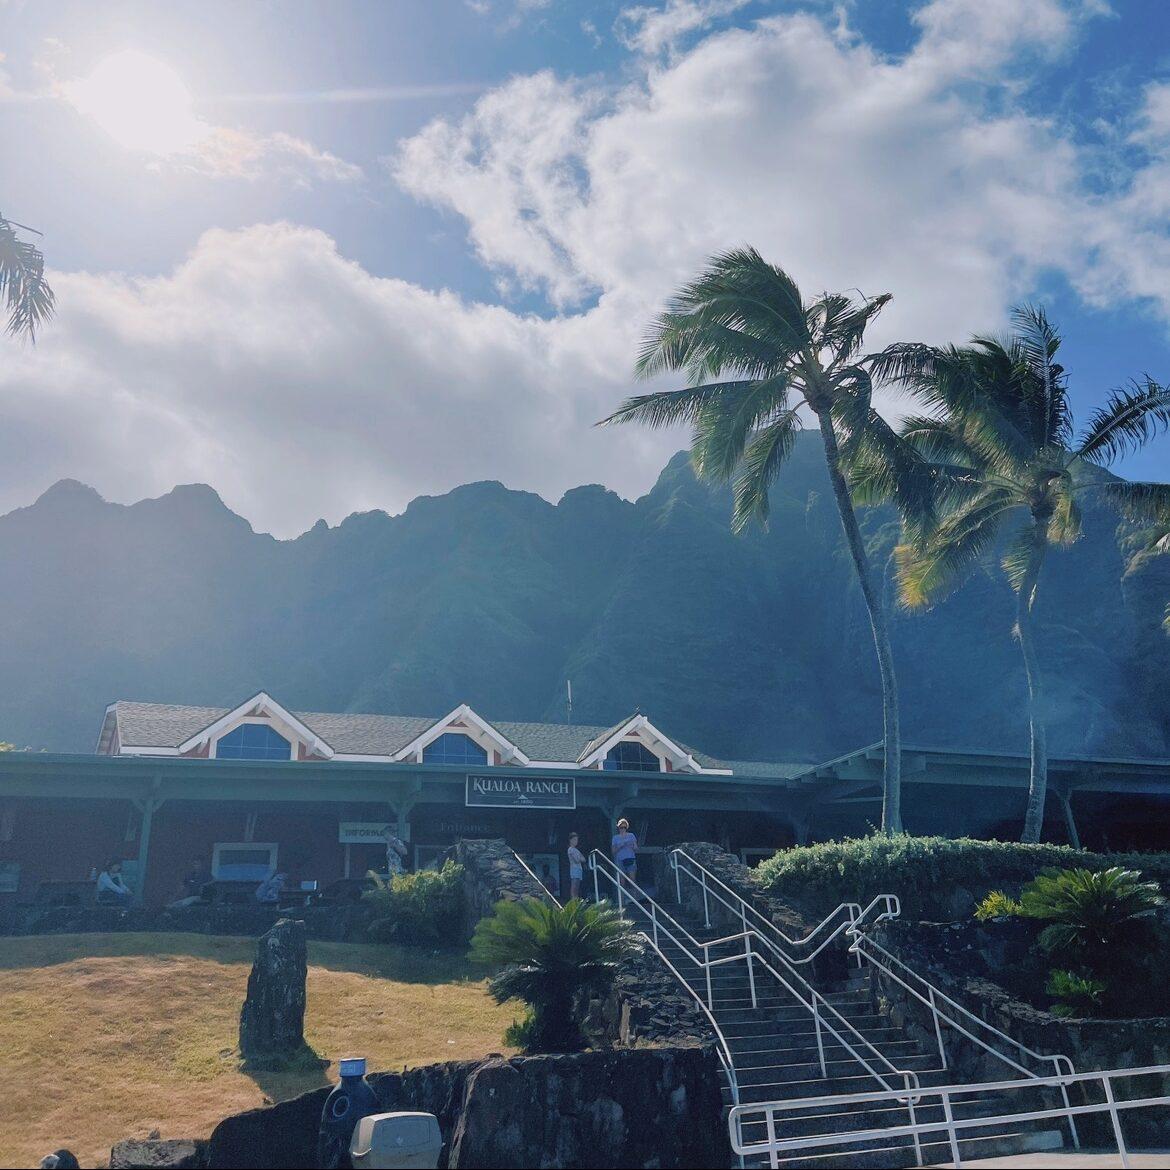 ハワイのクアロア・ランチ入口